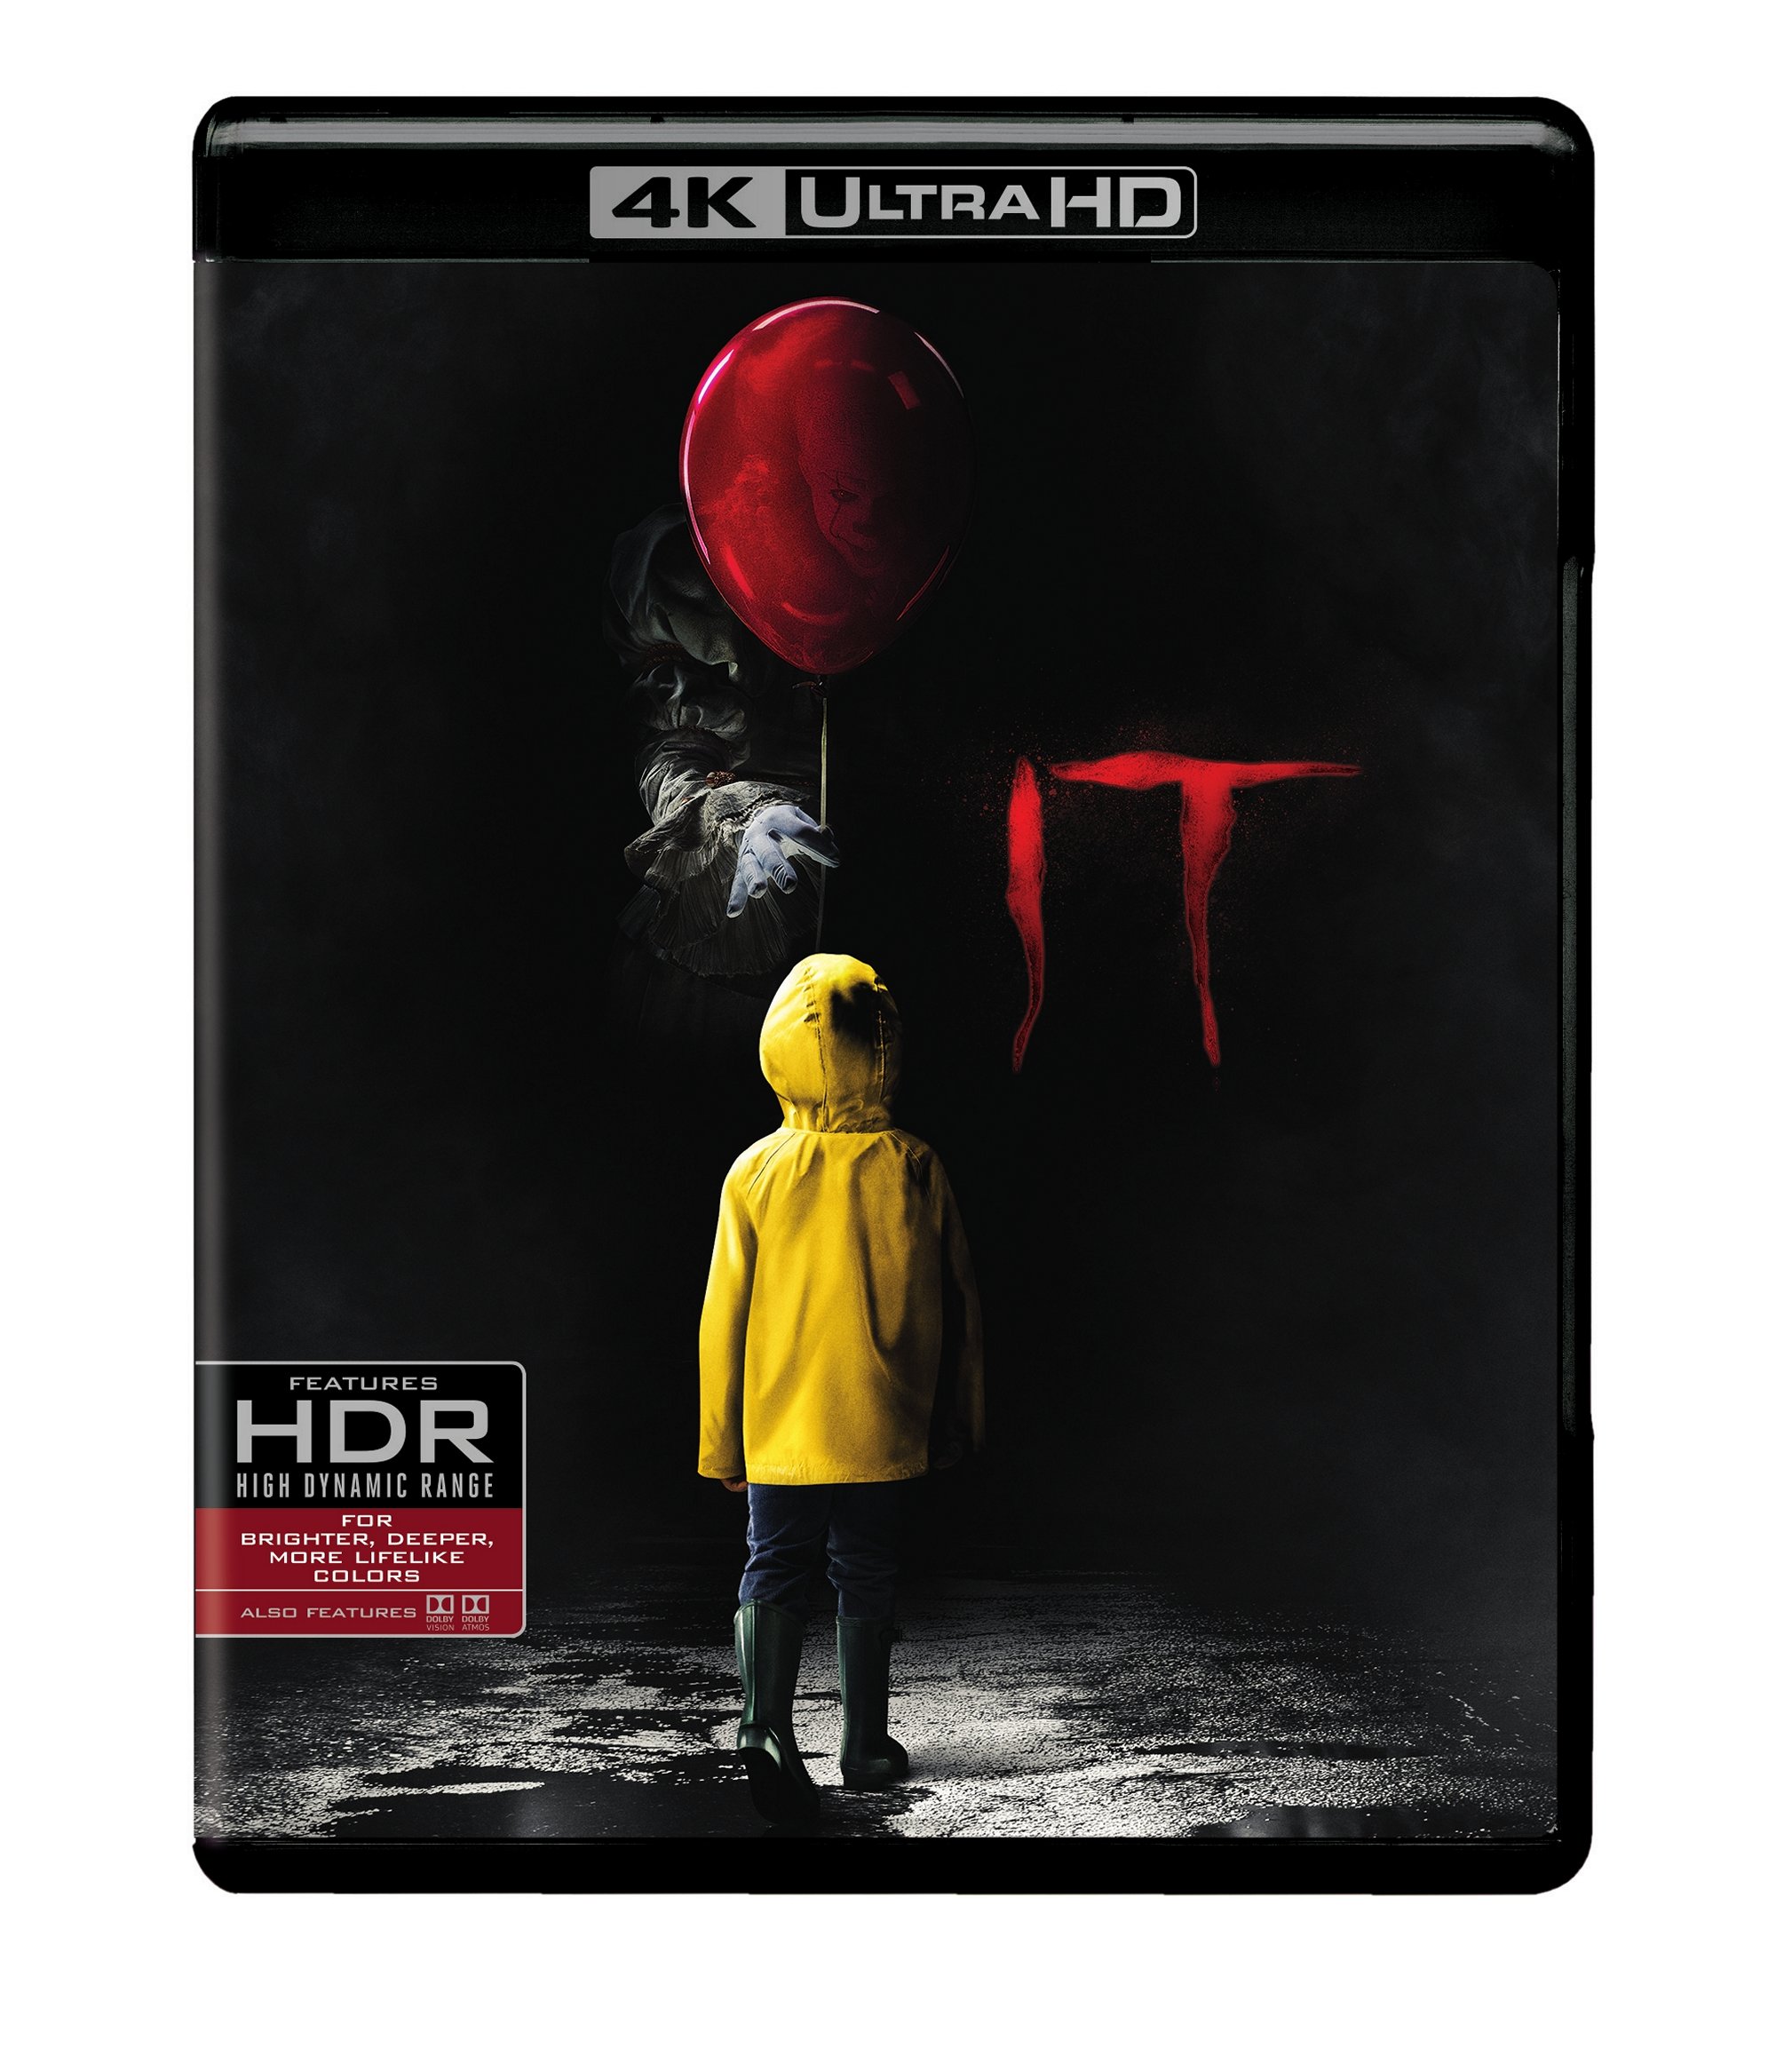 It (4K Ultra HD + Blu-ray) - UHD [ 2017 ]  - Horror Movies On 4K Ultra HD Blu-ray - Movies On GRUV